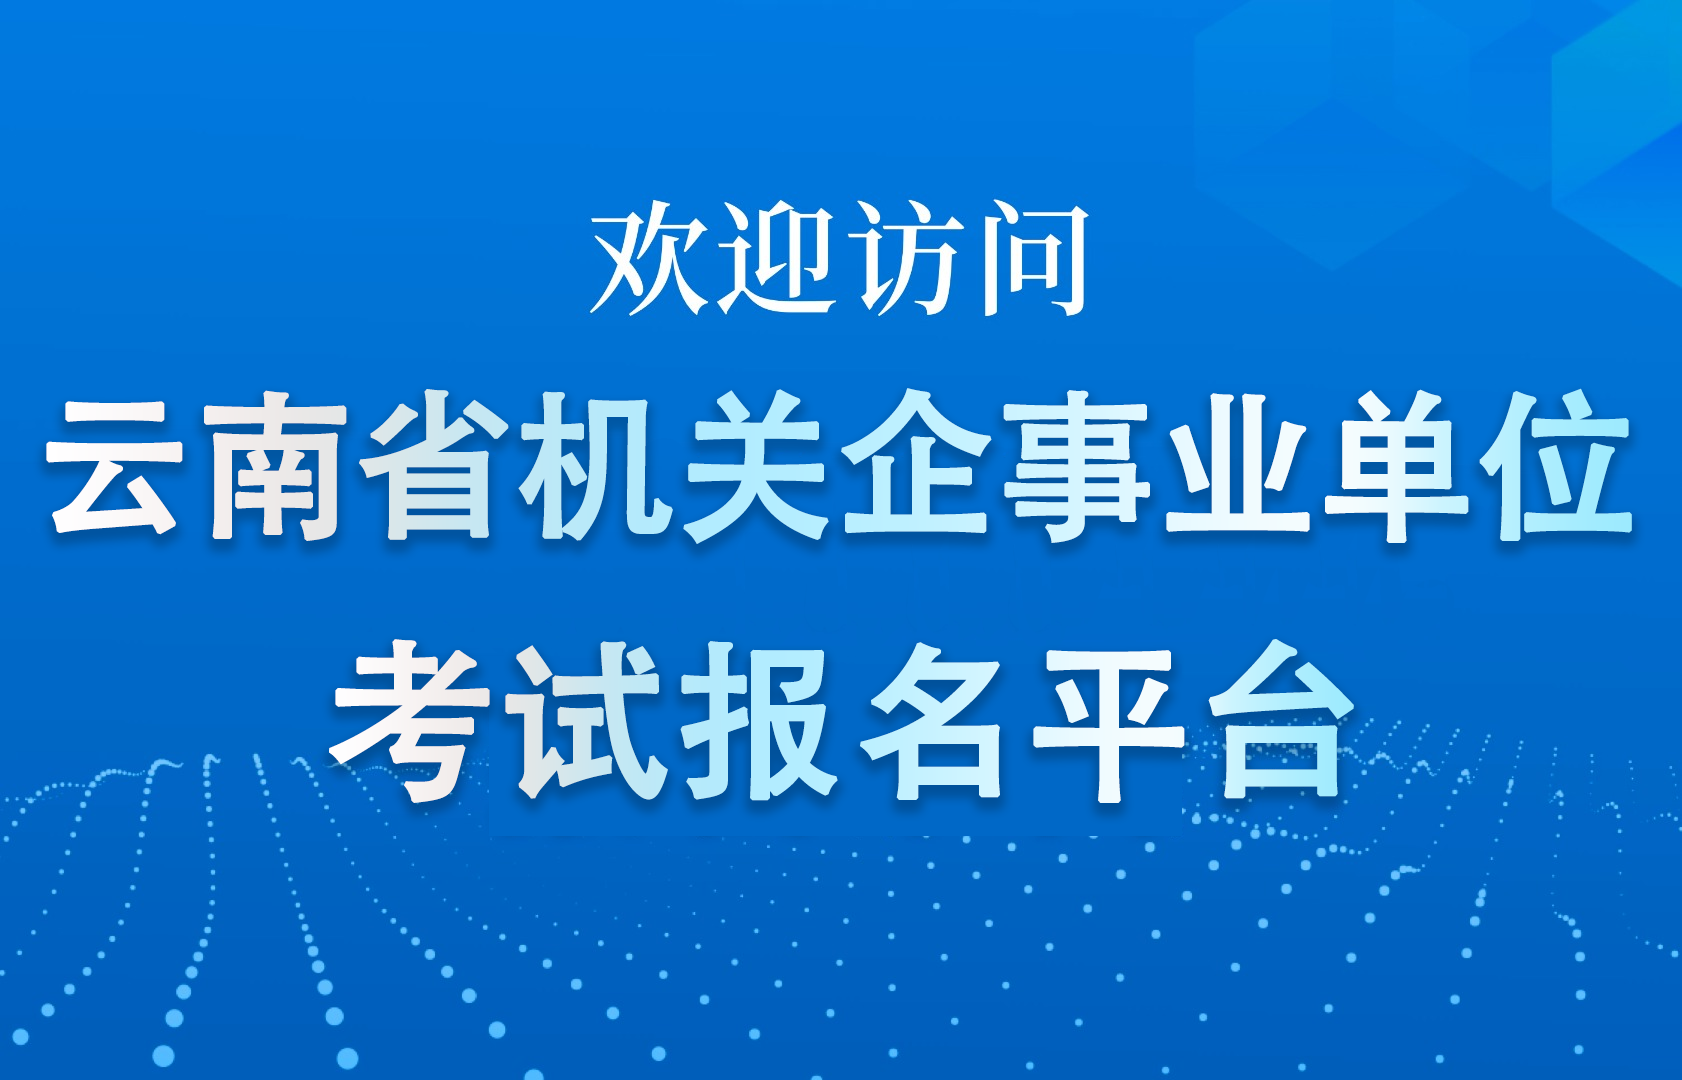 欢迎访问云南机关企事业单位招聘考试报名平台